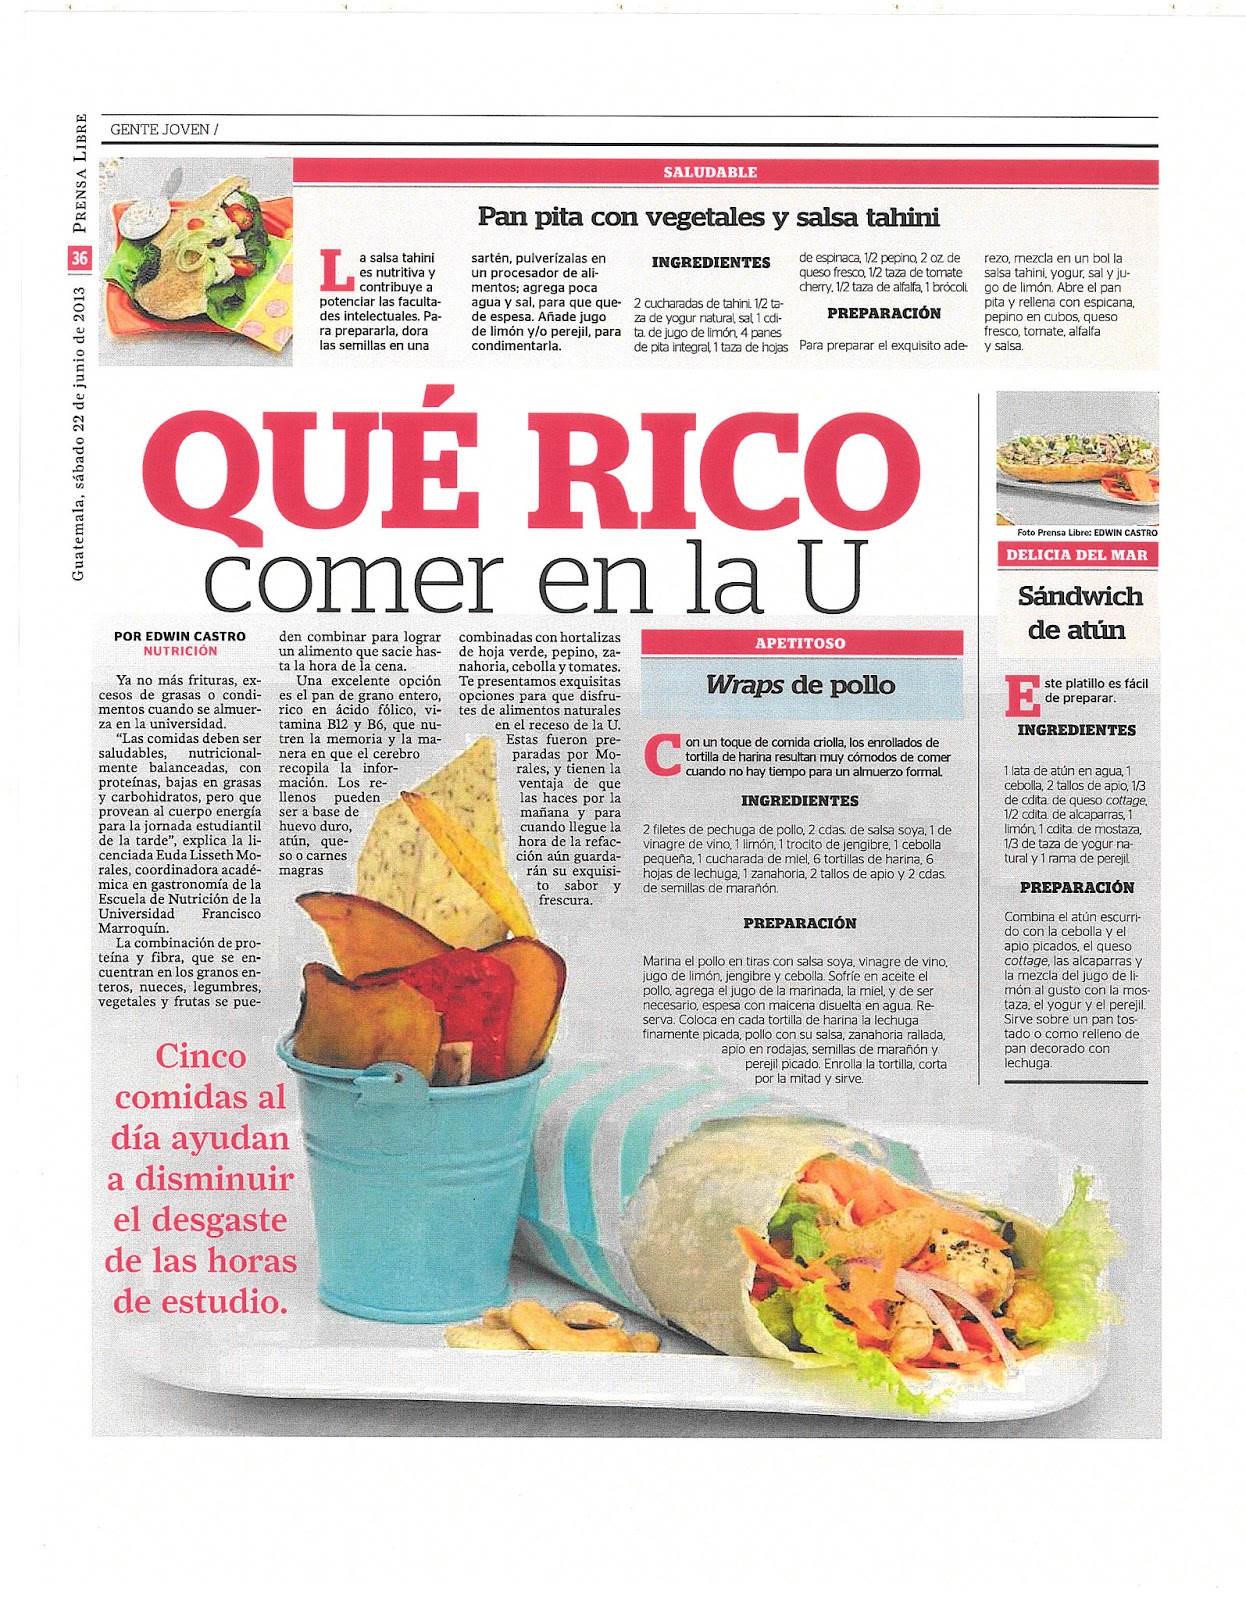 About Comida en la U - Food company in Colombia